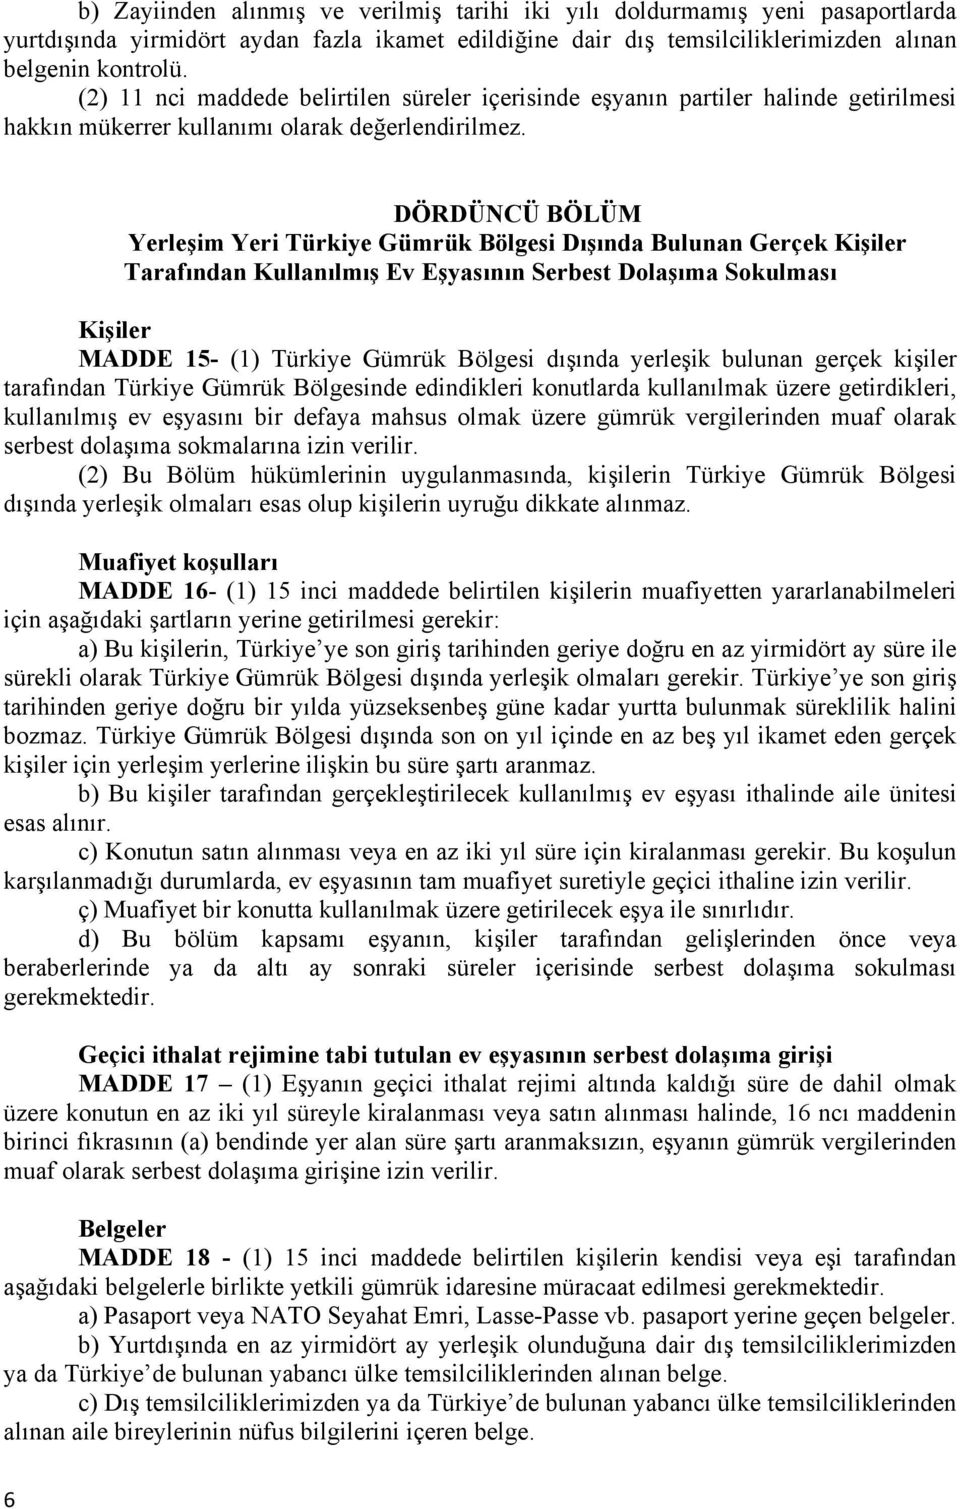 DÖRDÜNCÜ BÖLÜM Yerleşim Yeri Türkiye Gümrük Bölgesi Dışında Bulunan Gerçek Kişiler Tarafından Kullanılmış Ev Eşyasının Serbest Dolaşıma Sokulması Kişiler MADDE 15- (1) Türkiye Gümrük Bölgesi dışında